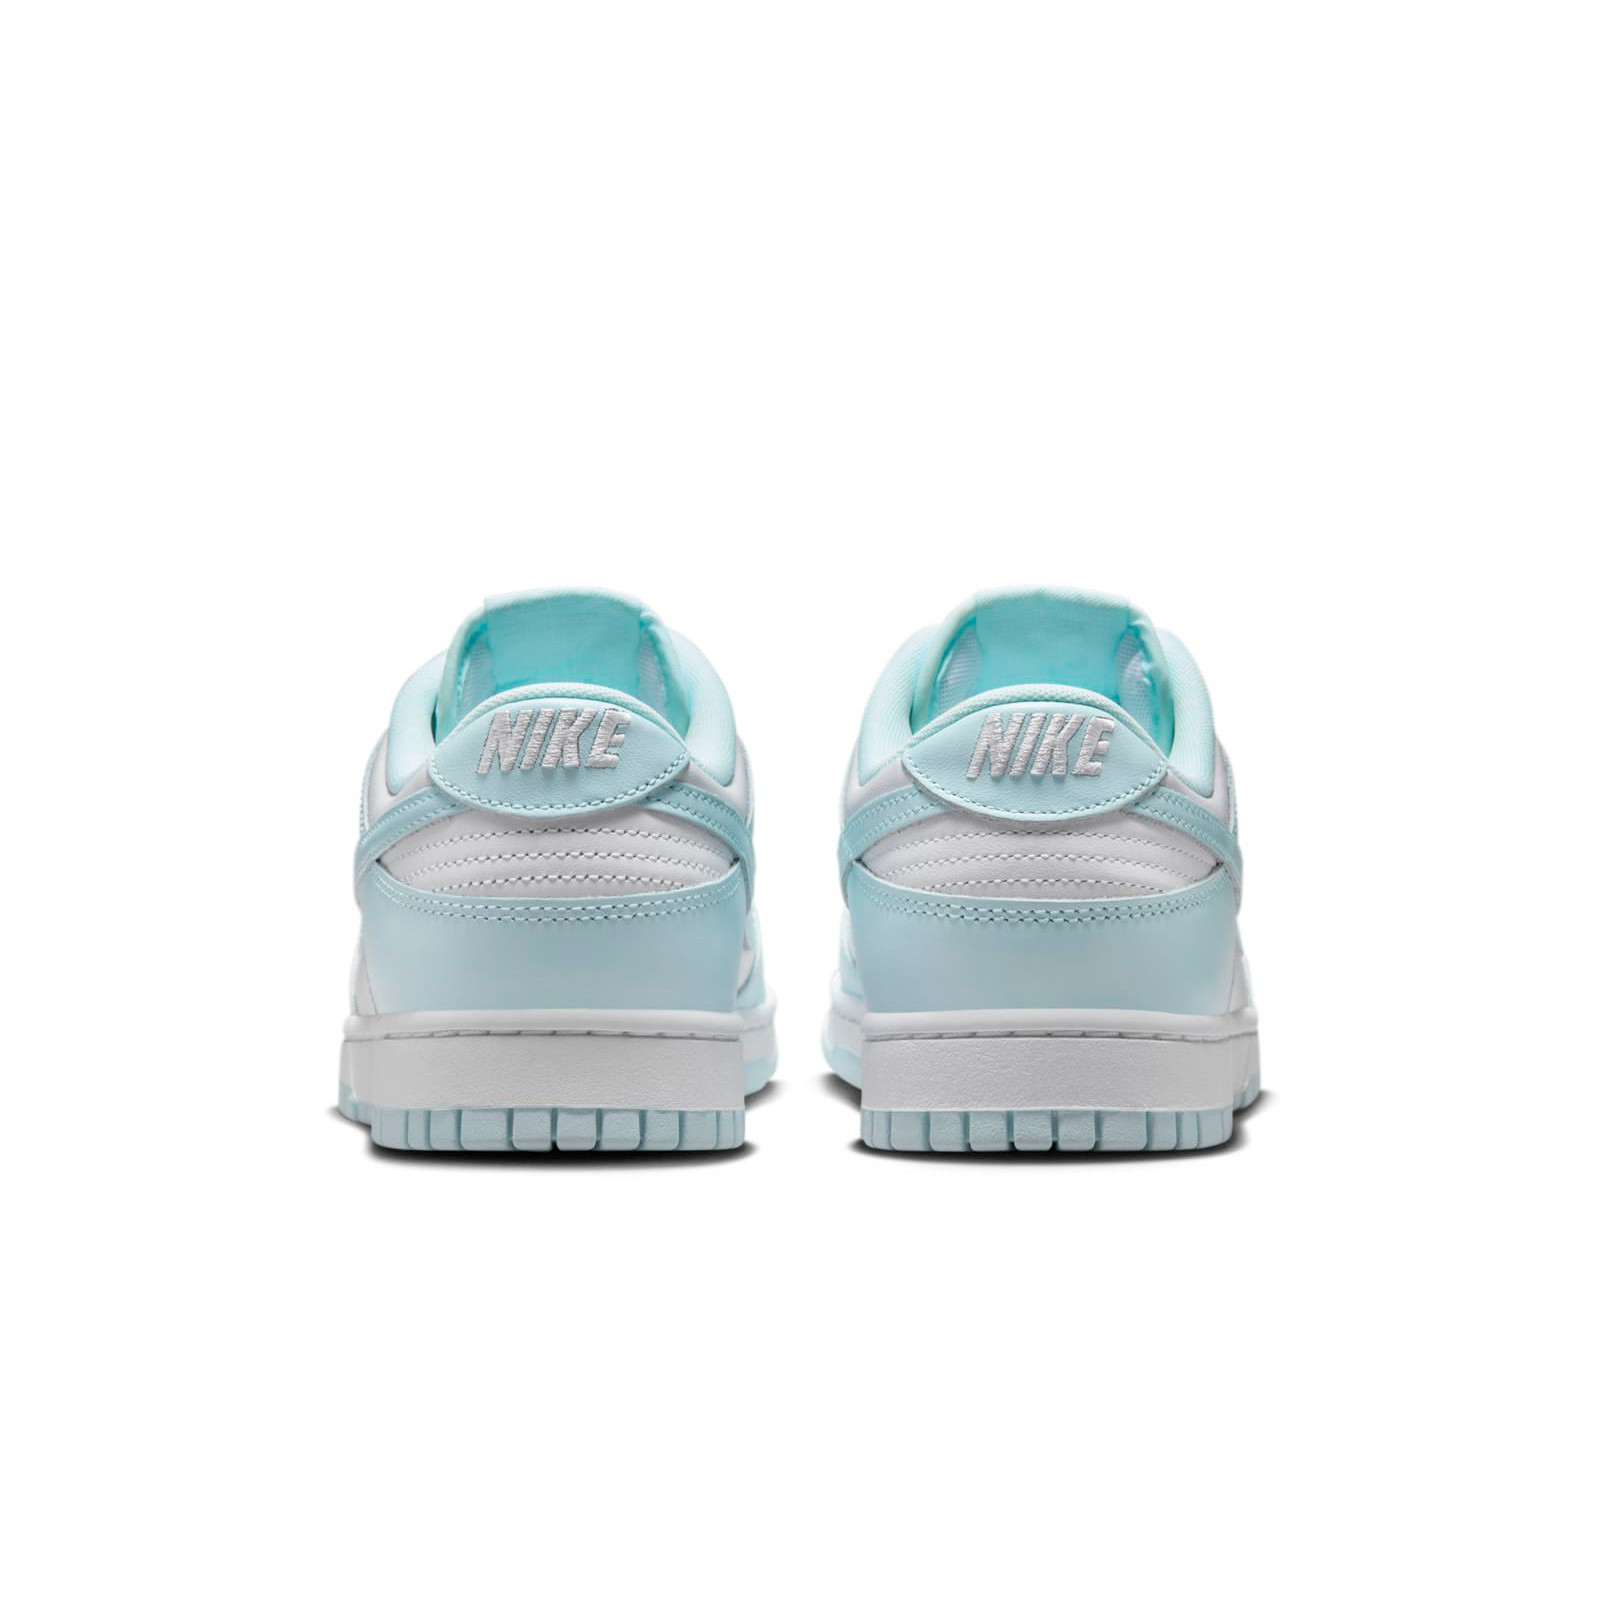 Nike Dunk Low
White / Glacier Blue